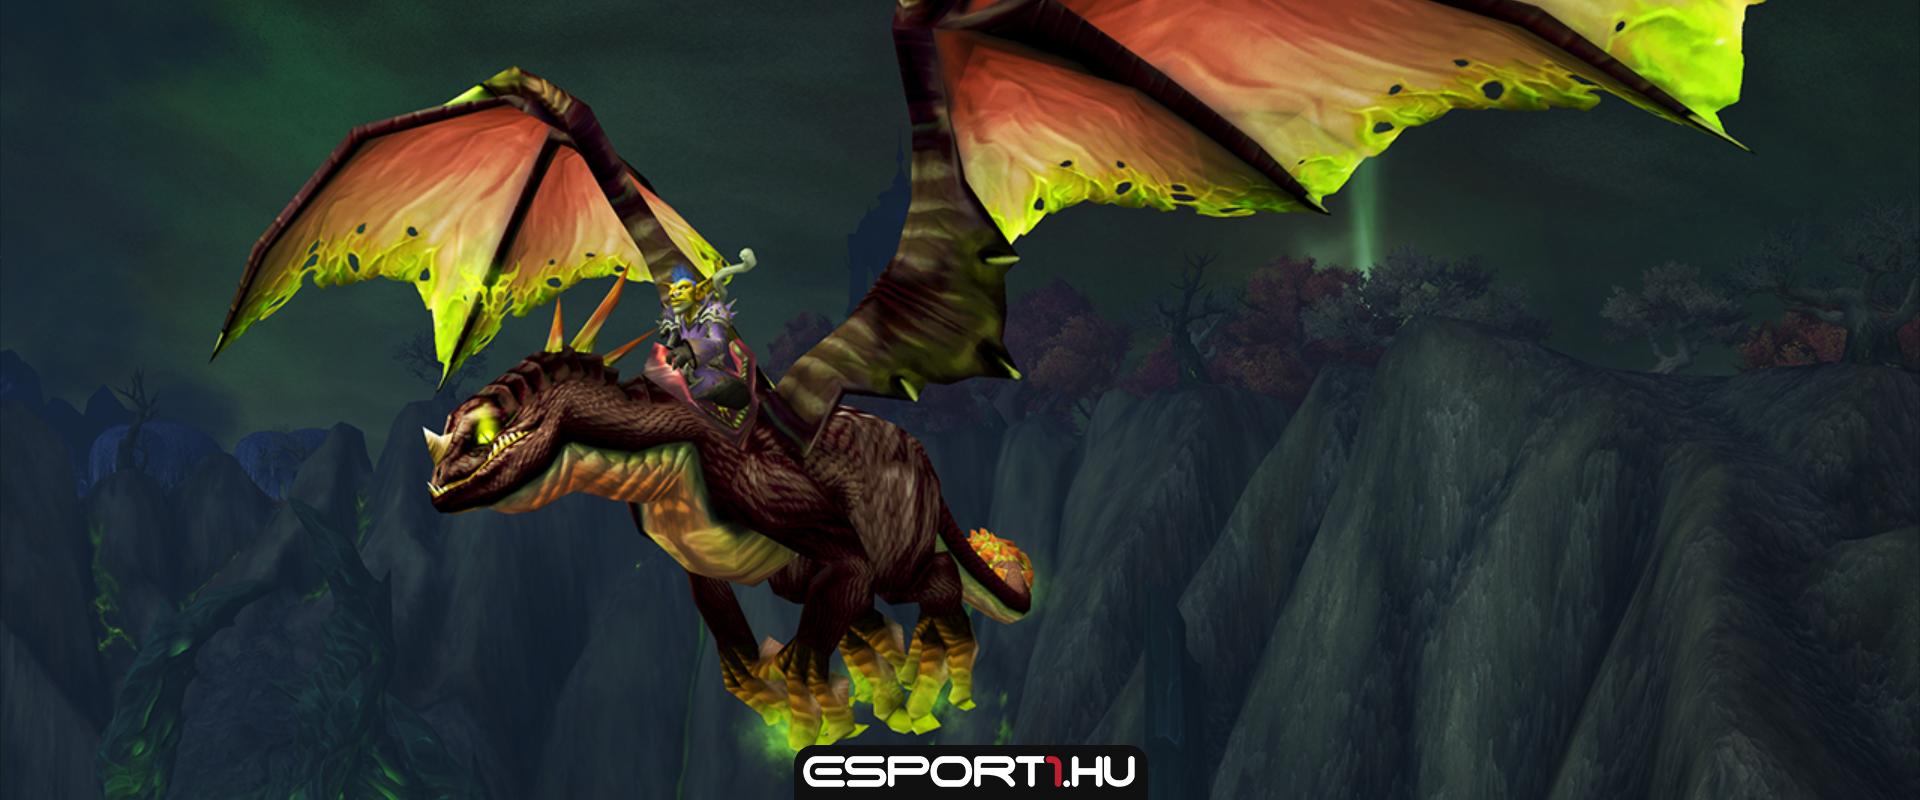 World of Warcraft: 3000 dolláros Feldrake hátast szerezhetünk ingyen